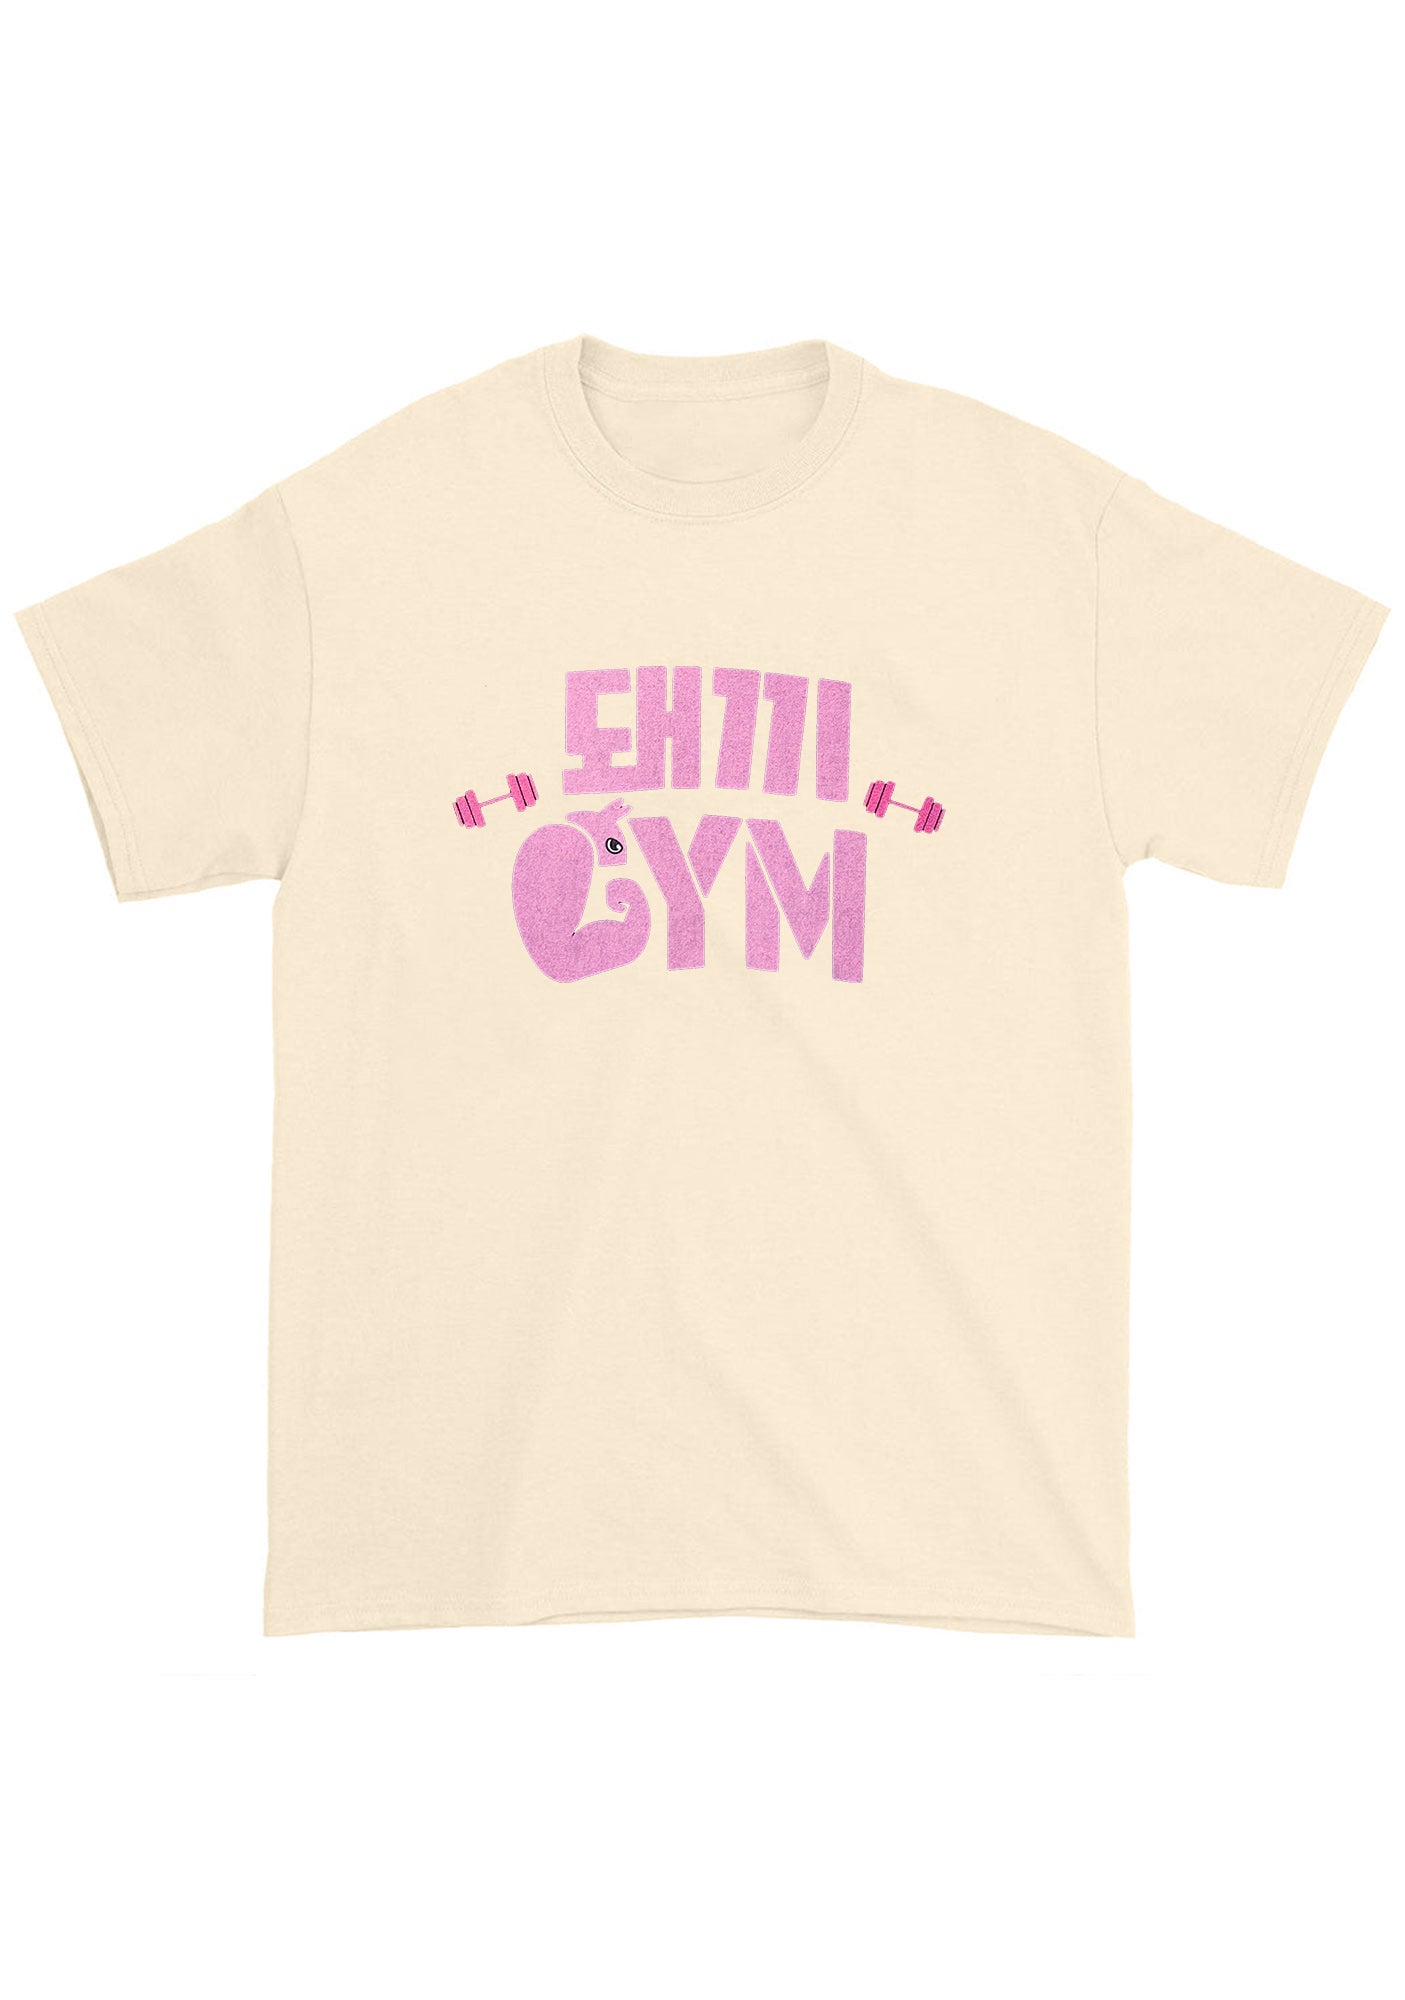 Binnie's Gym Skz Kpop Chunky Shirt